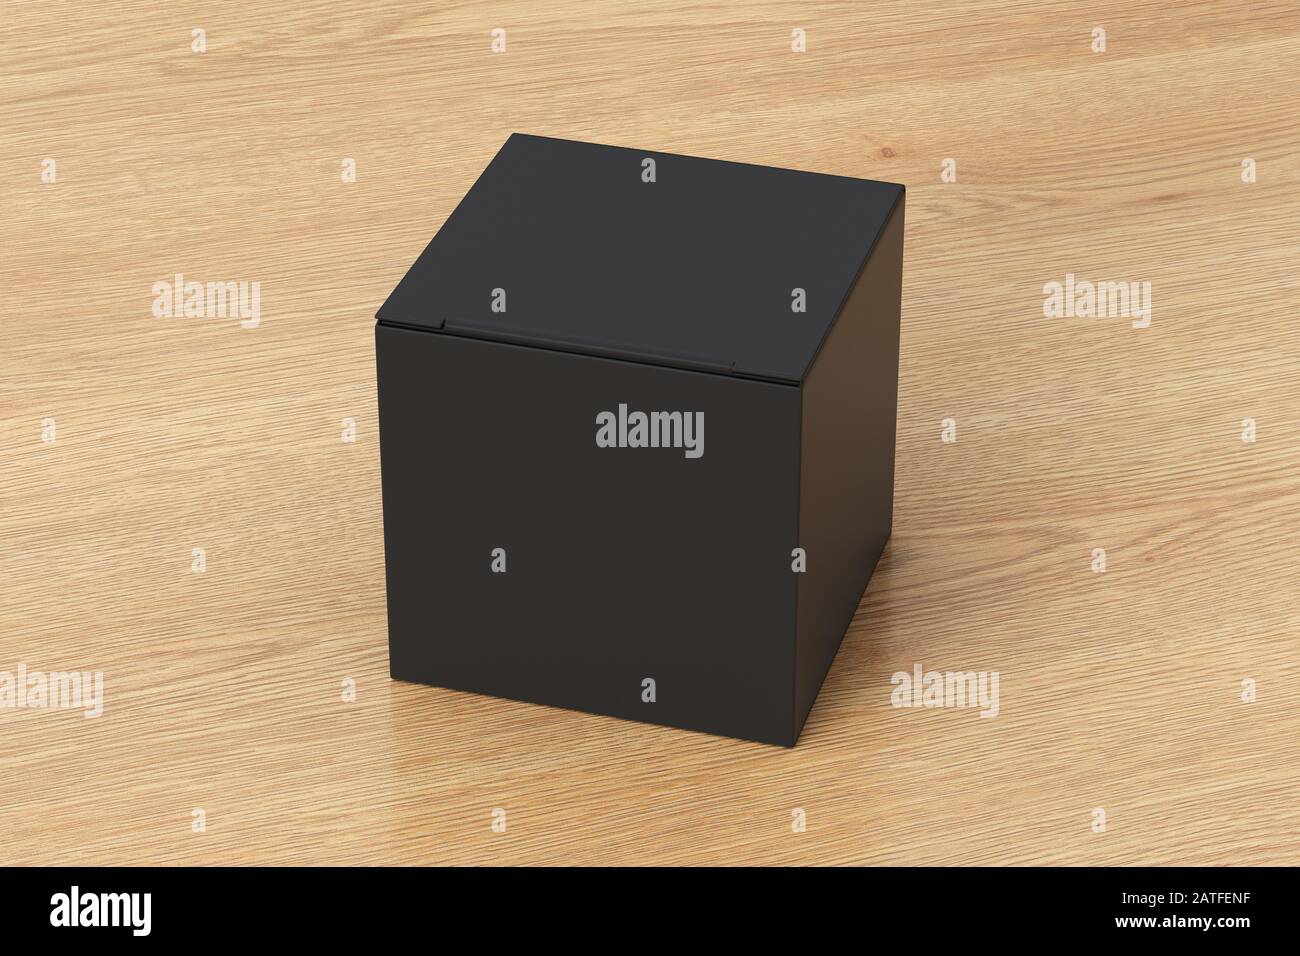 Boîte cadeau cube noir vierge avec couvercle à rabat fermé sur fond en bois. Chemin de détourage autour de la maquette de boîte Banque D'Images